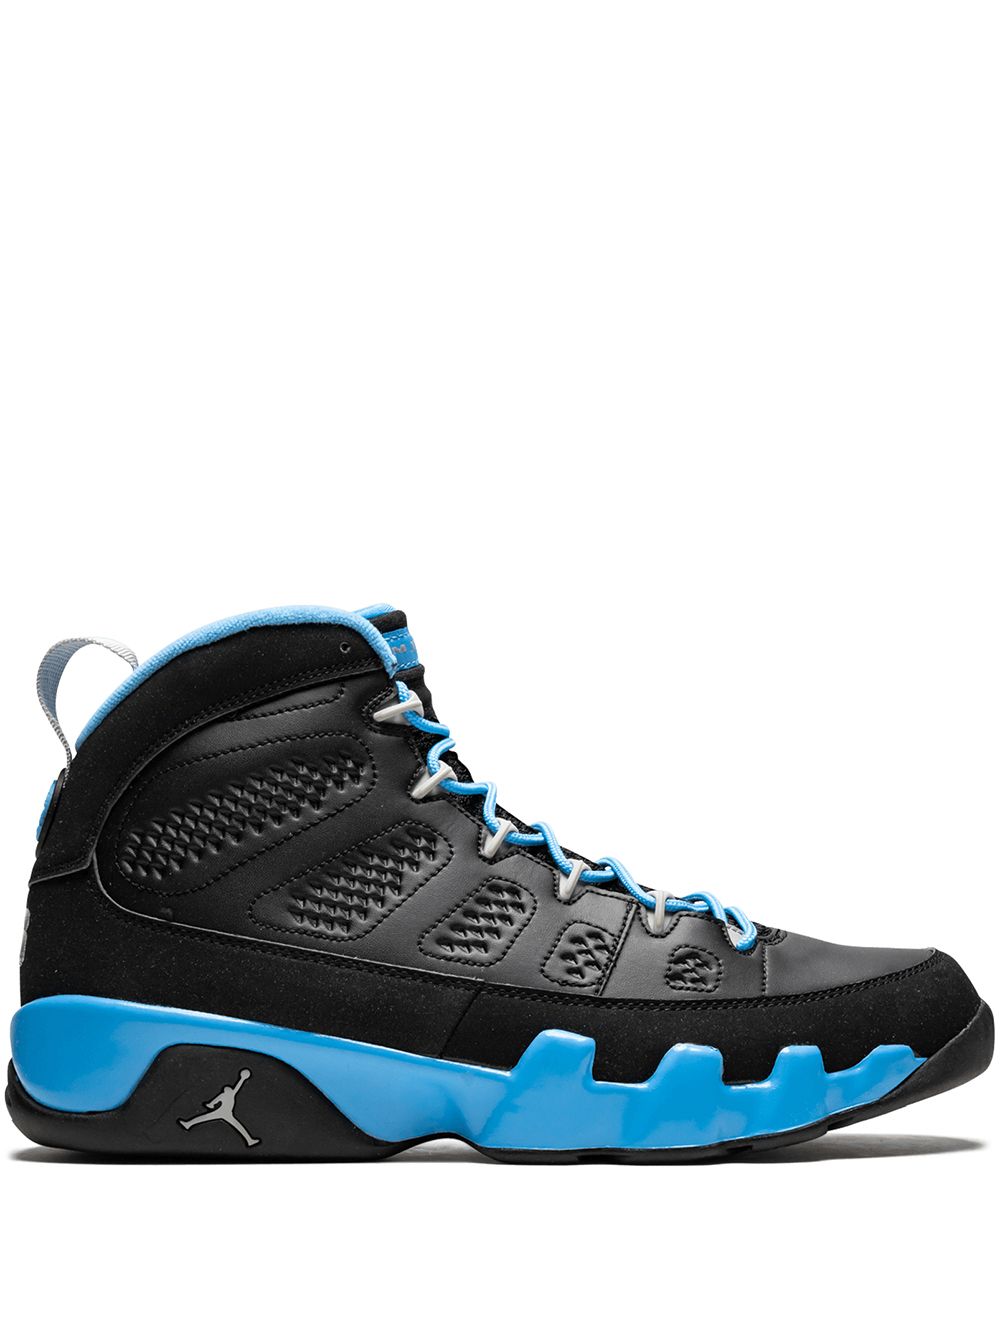 Jordan Air Jordan 9 retro sneakers - Black